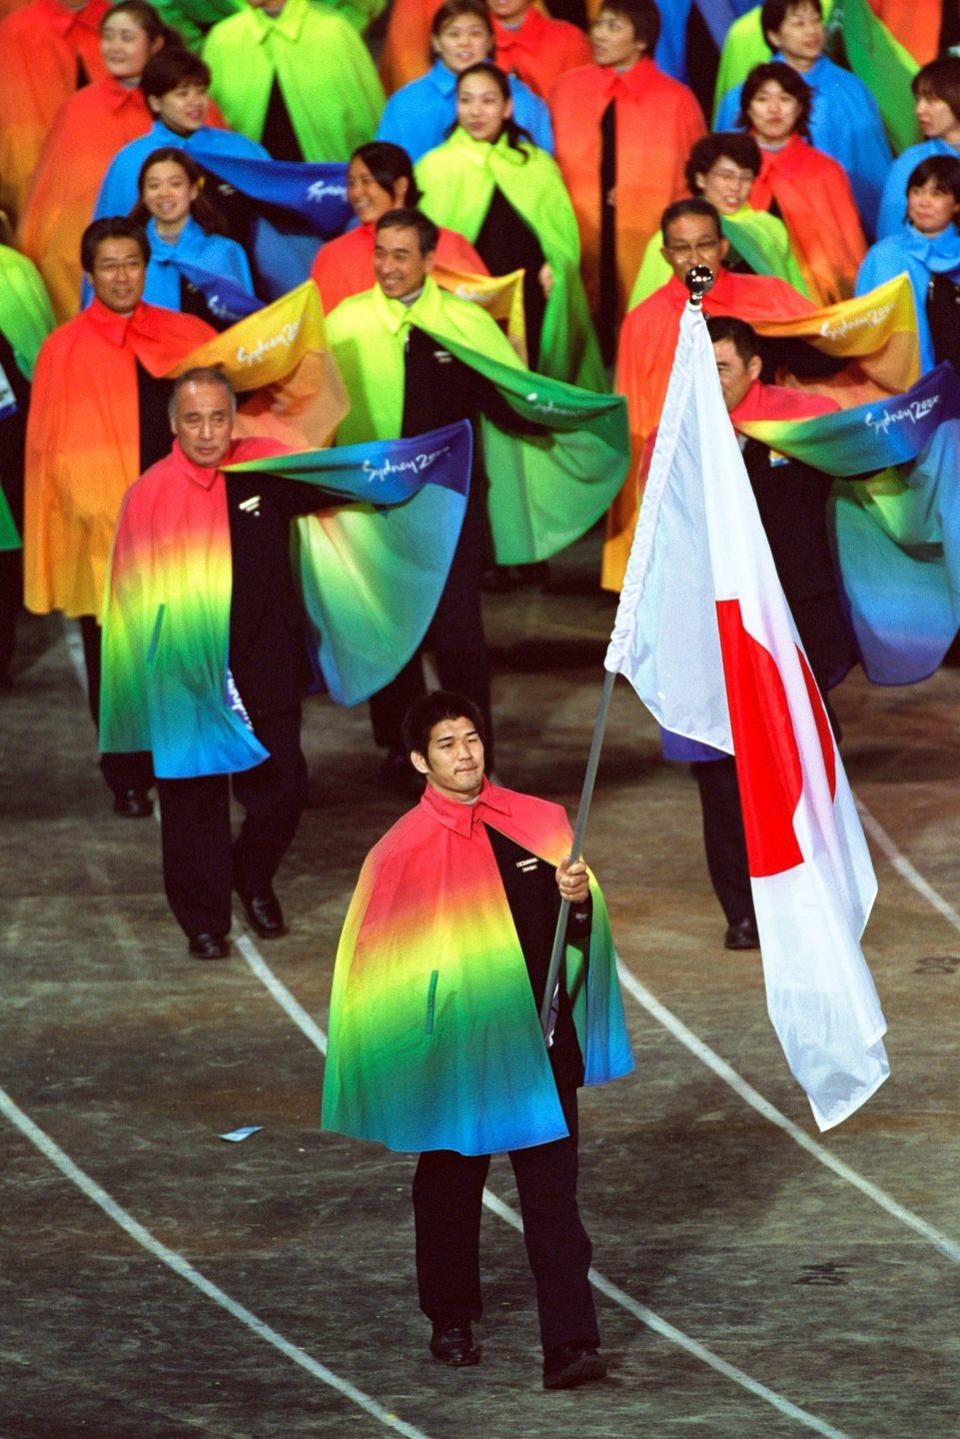 2000: Japan's Olympic Team